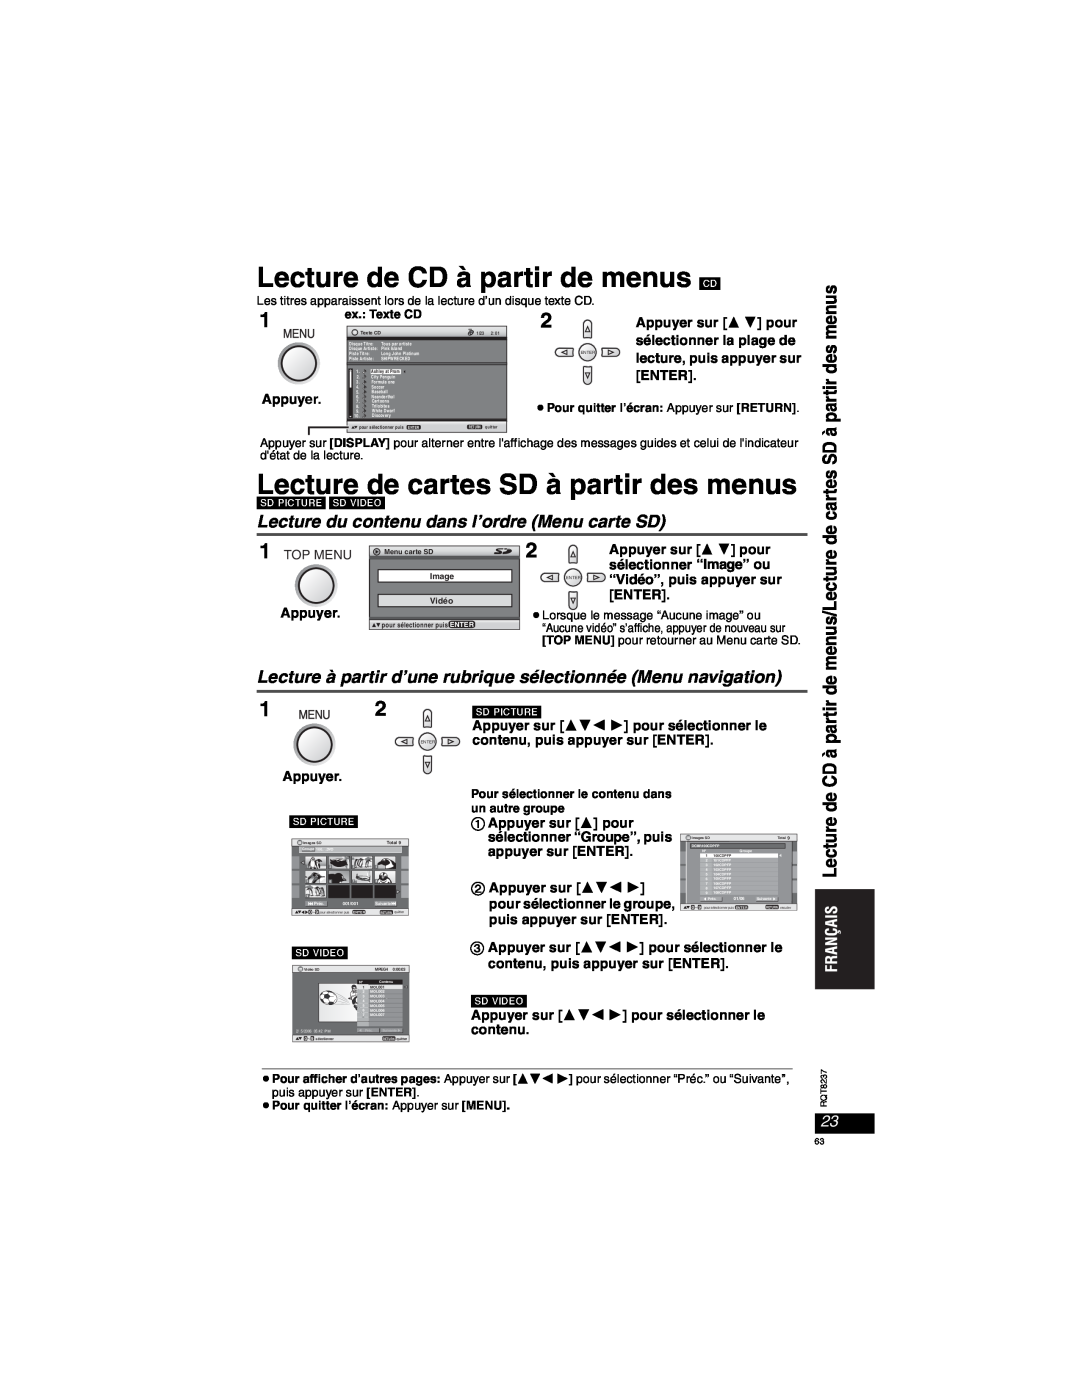 Panasonic DVD-LX97 Lecture de CD à partir de menus CD, Lecture de cartes SD à partir des menus, Appuyer sur  pour, Enter 